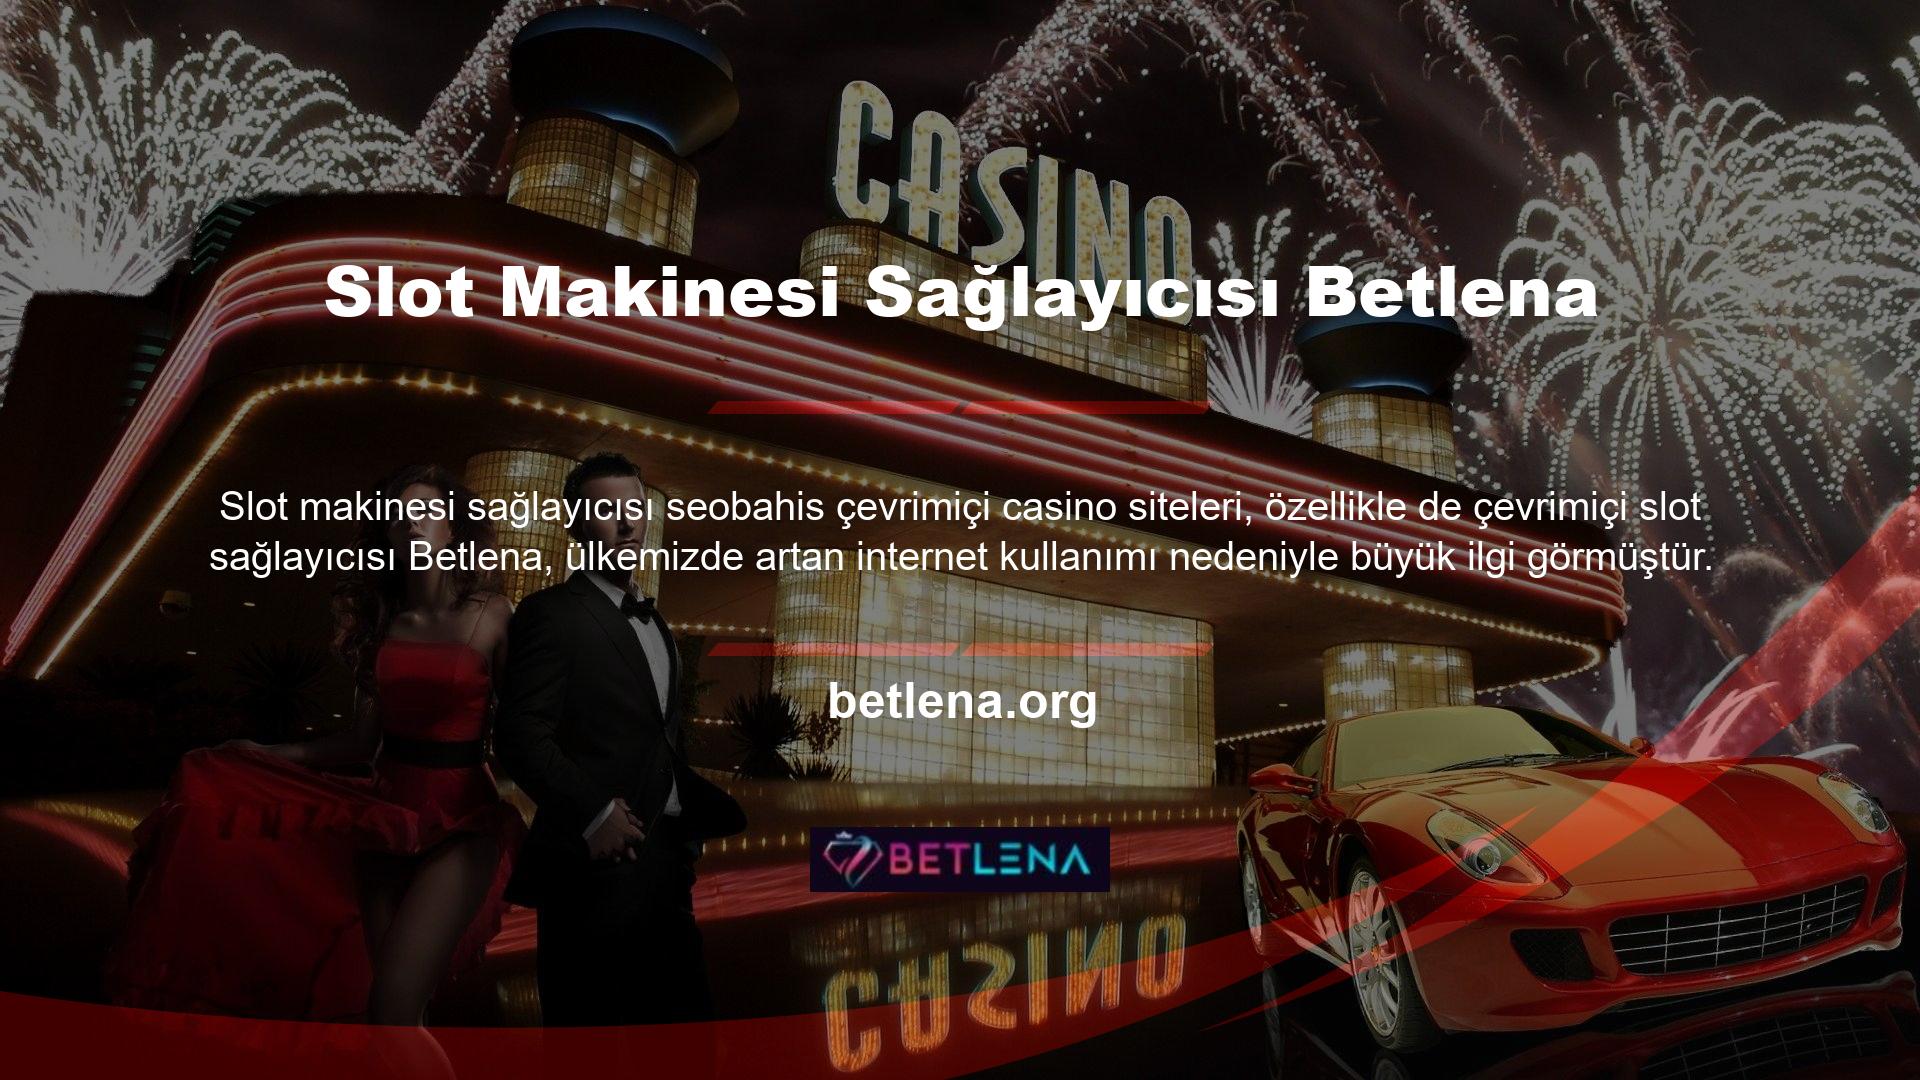 Artan ilgi ve talebin ortasında yeni çevrimiçi casino siteleri, oyunculara hizmet vermek için casino endüstrisinde bir niş oluşturmaya çalışıyor